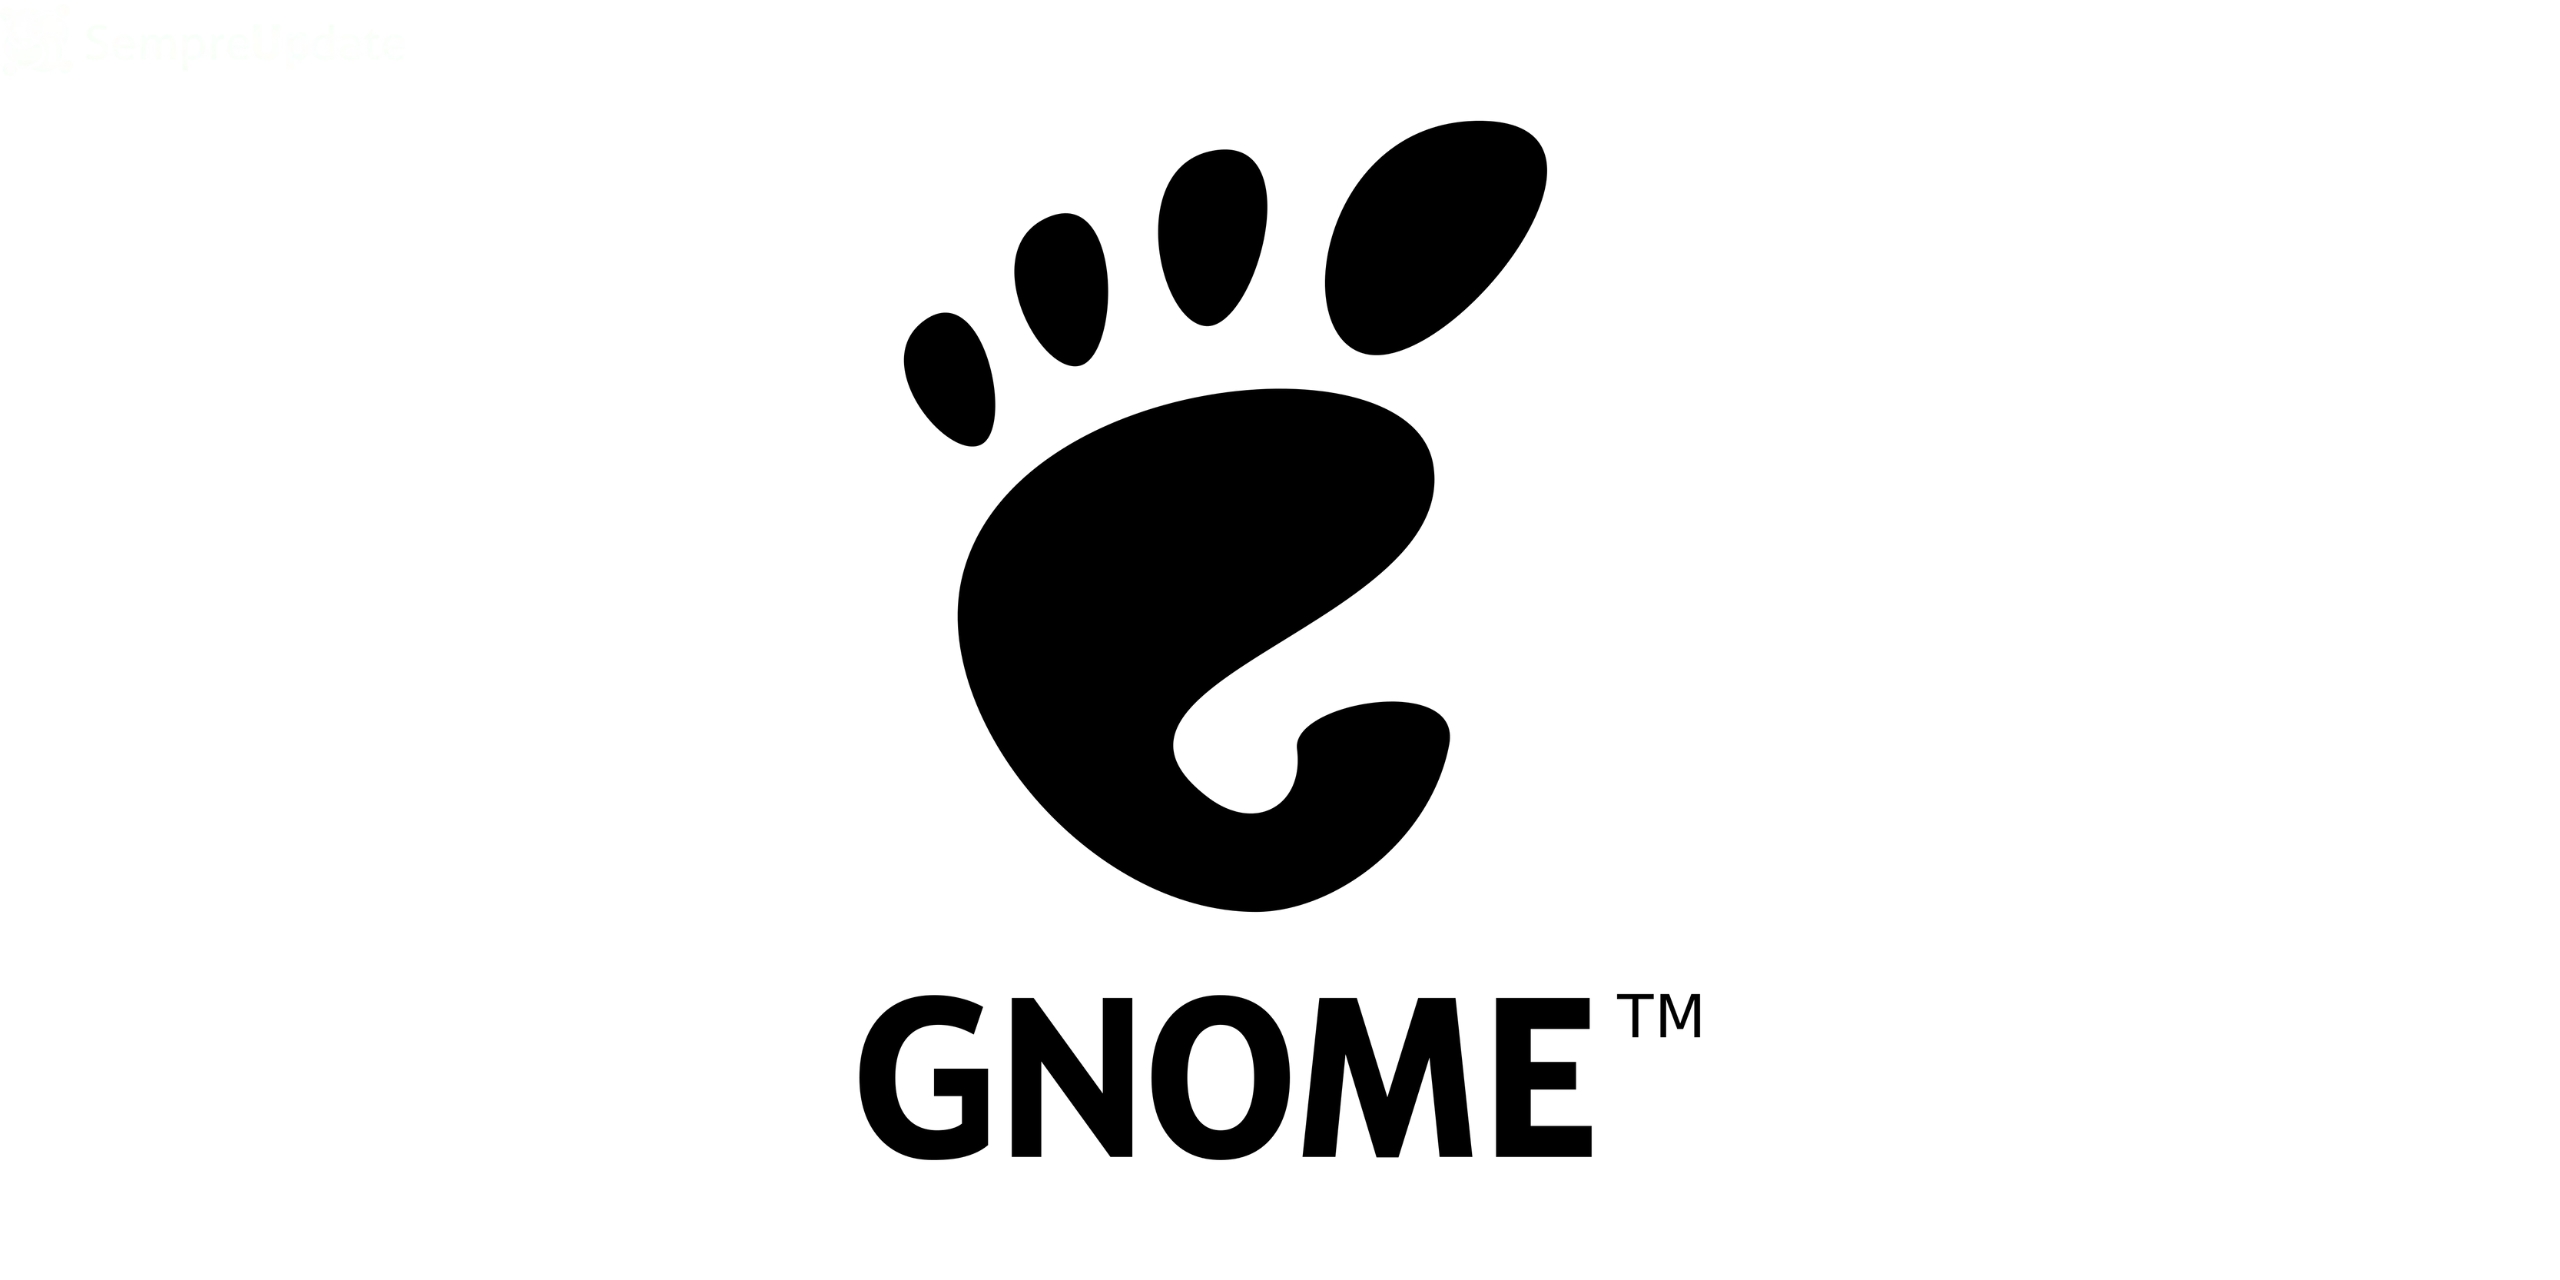 Terminal GNOME trabalhando para migrar para GTK 4 e VTE para superar o limite de 40 FPS